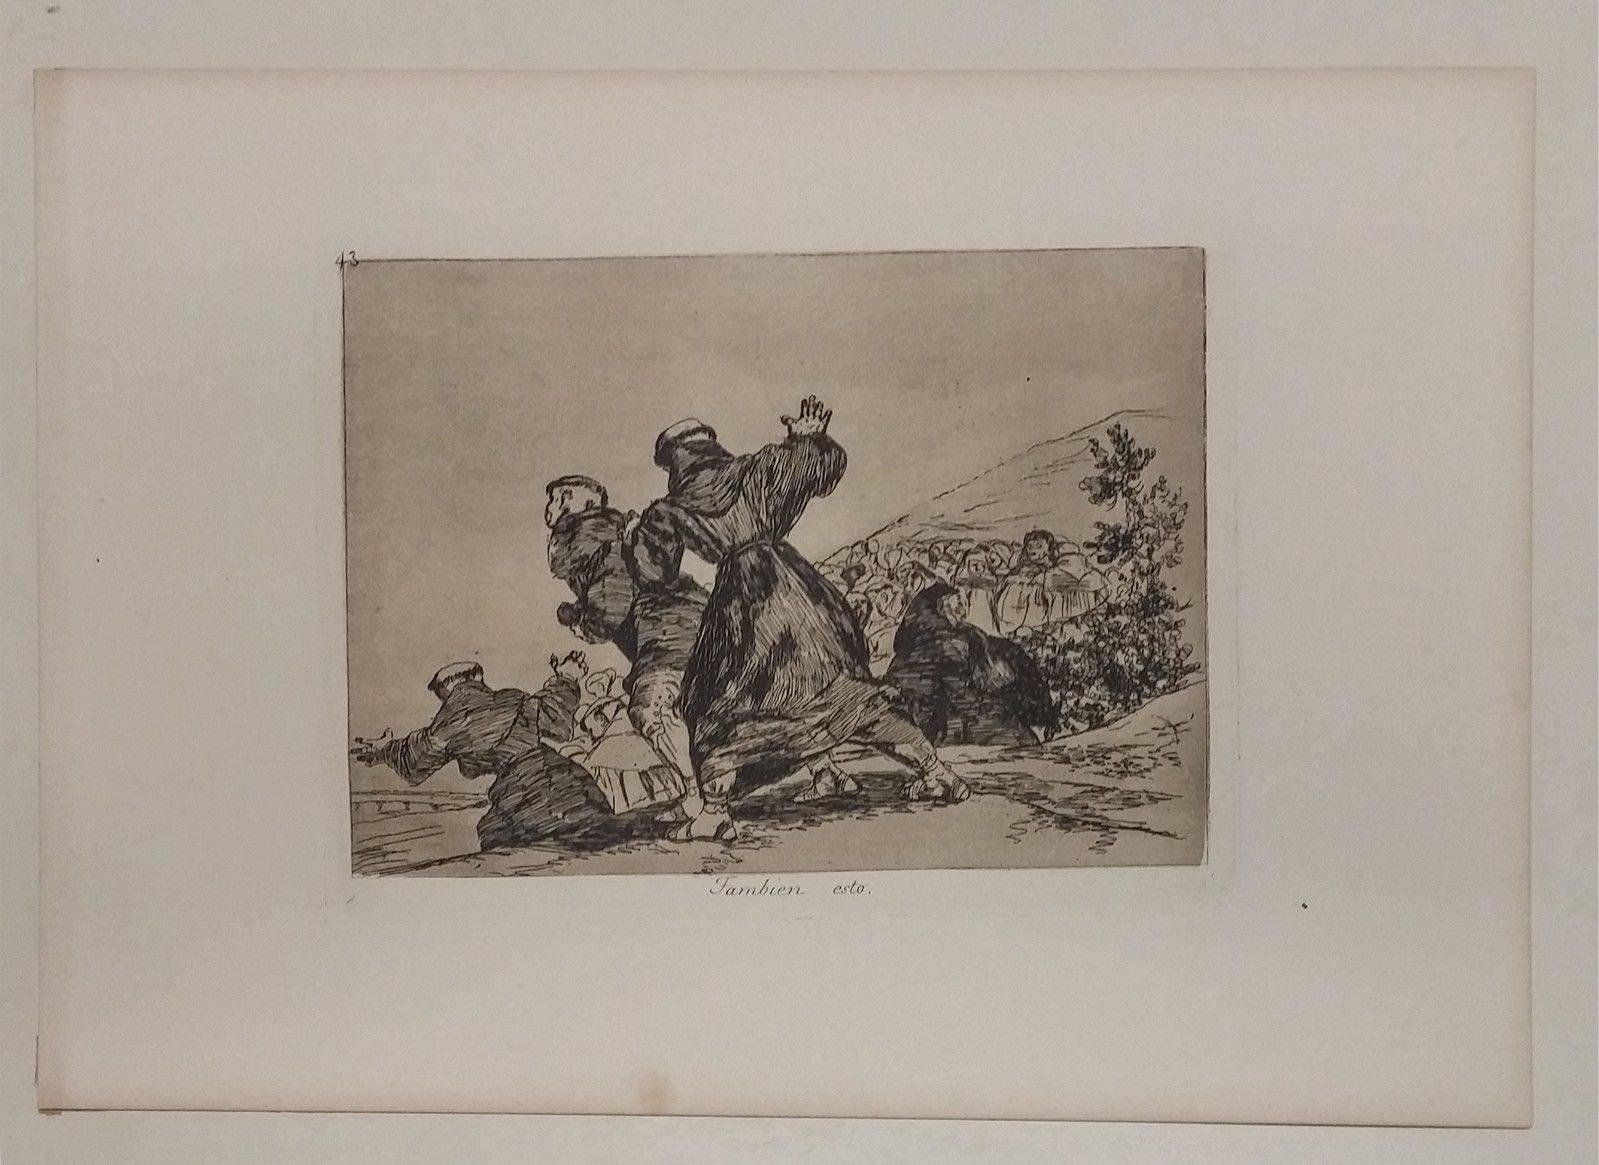 TAMBIEN ESTO - Print by Francisco Goya